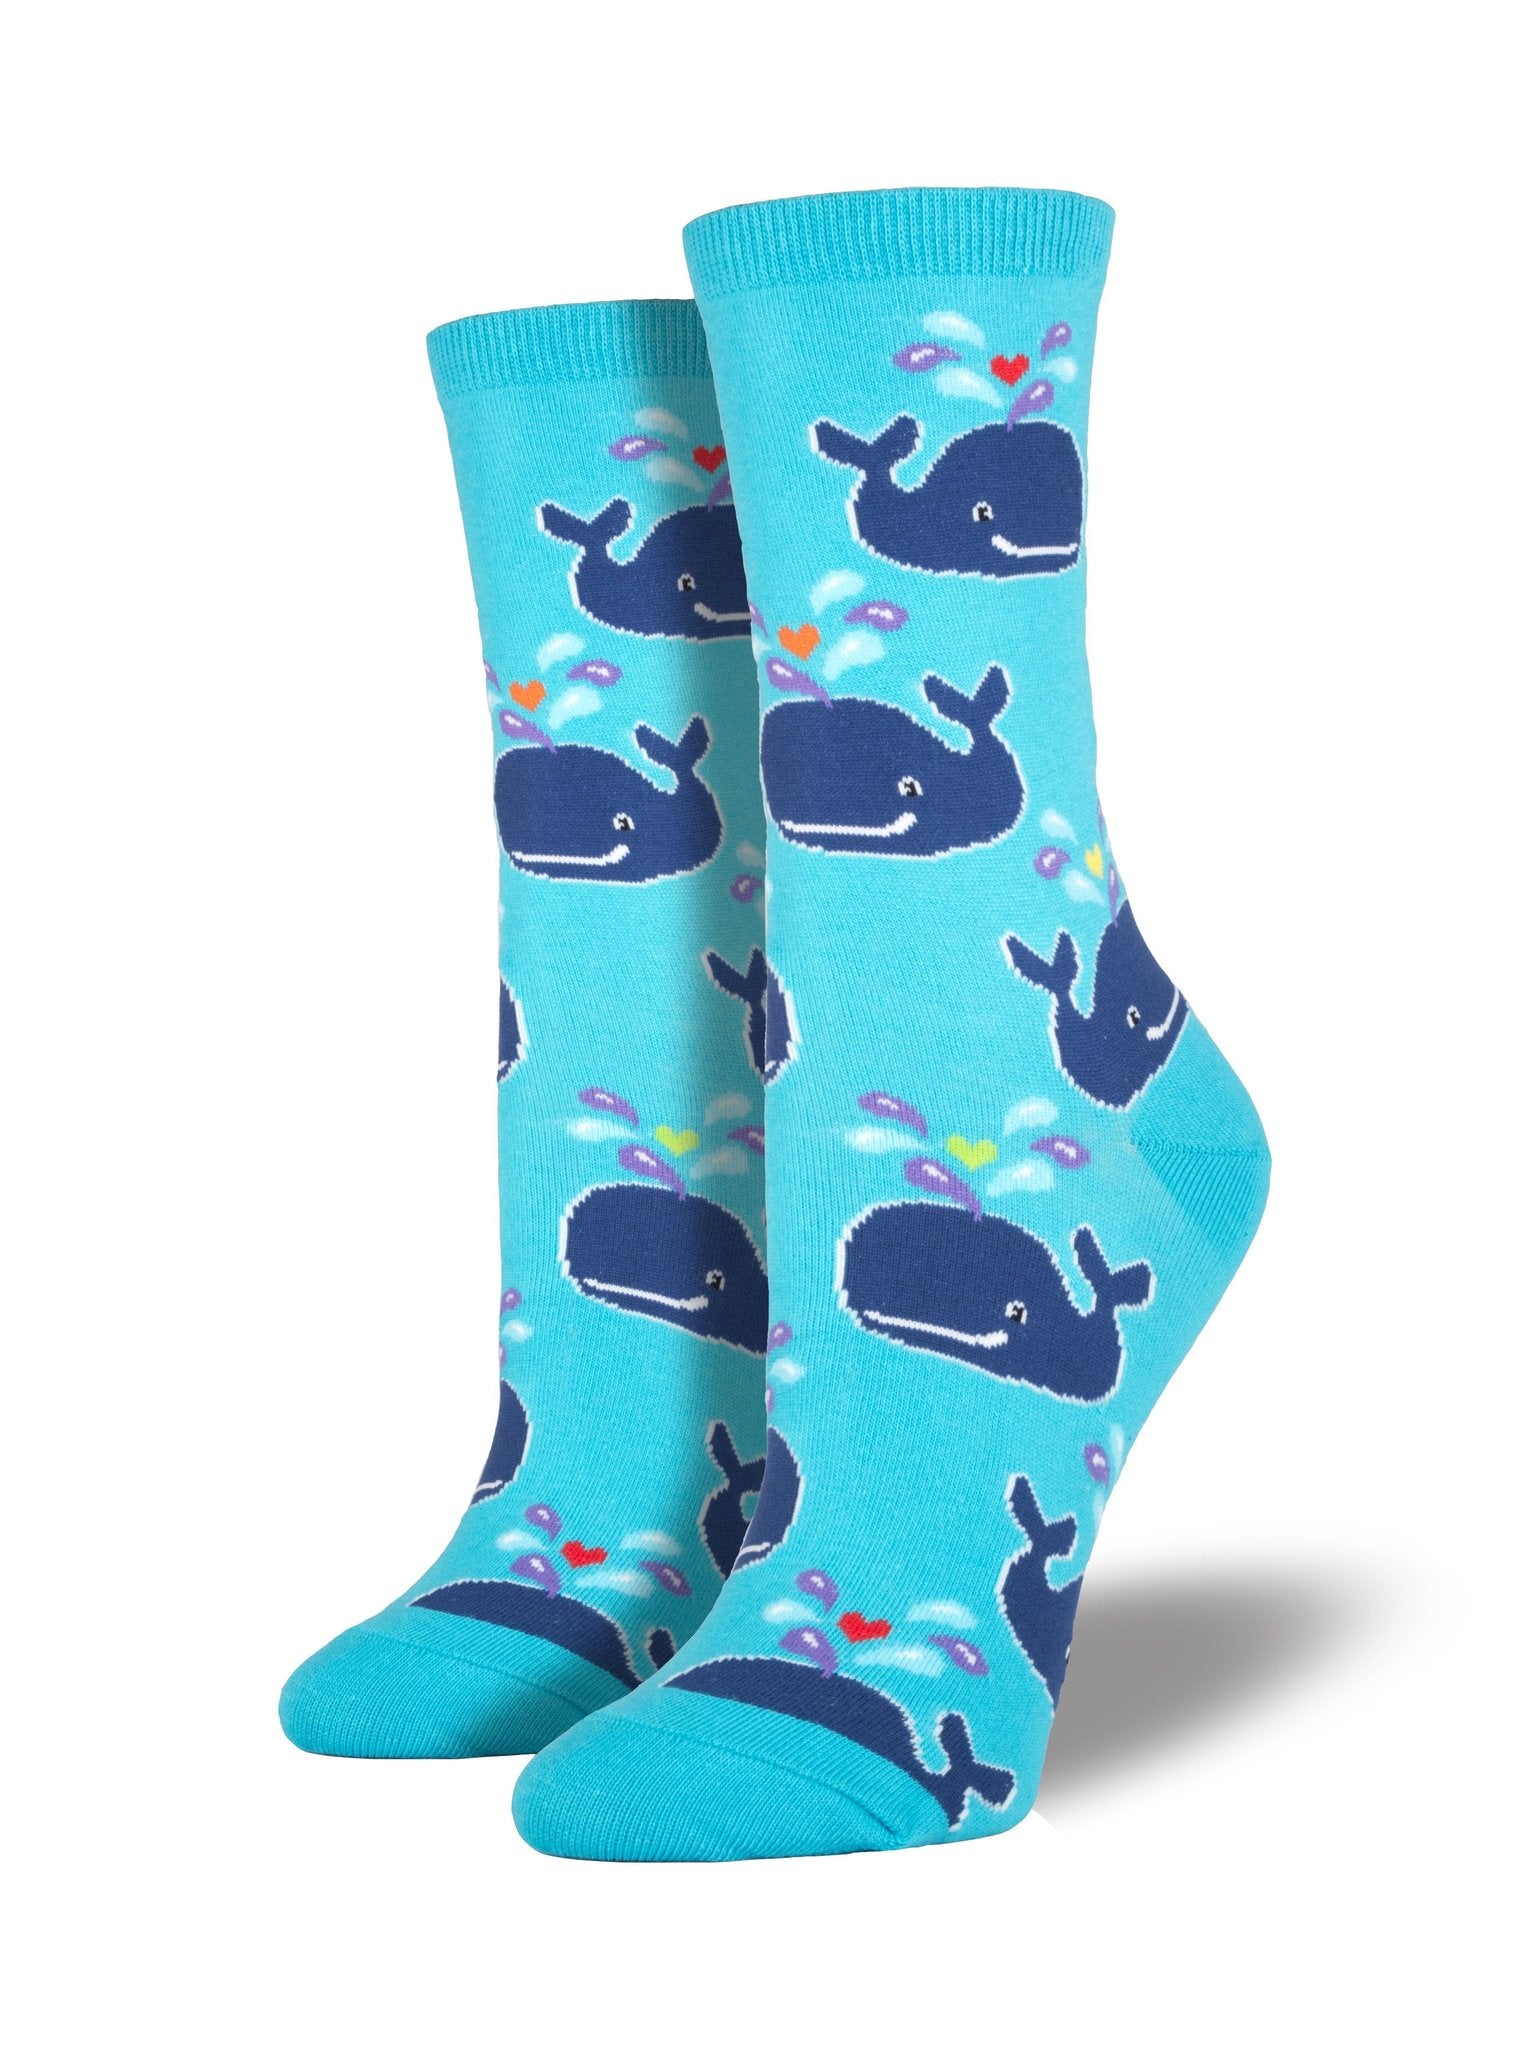 Whale Women's Socks